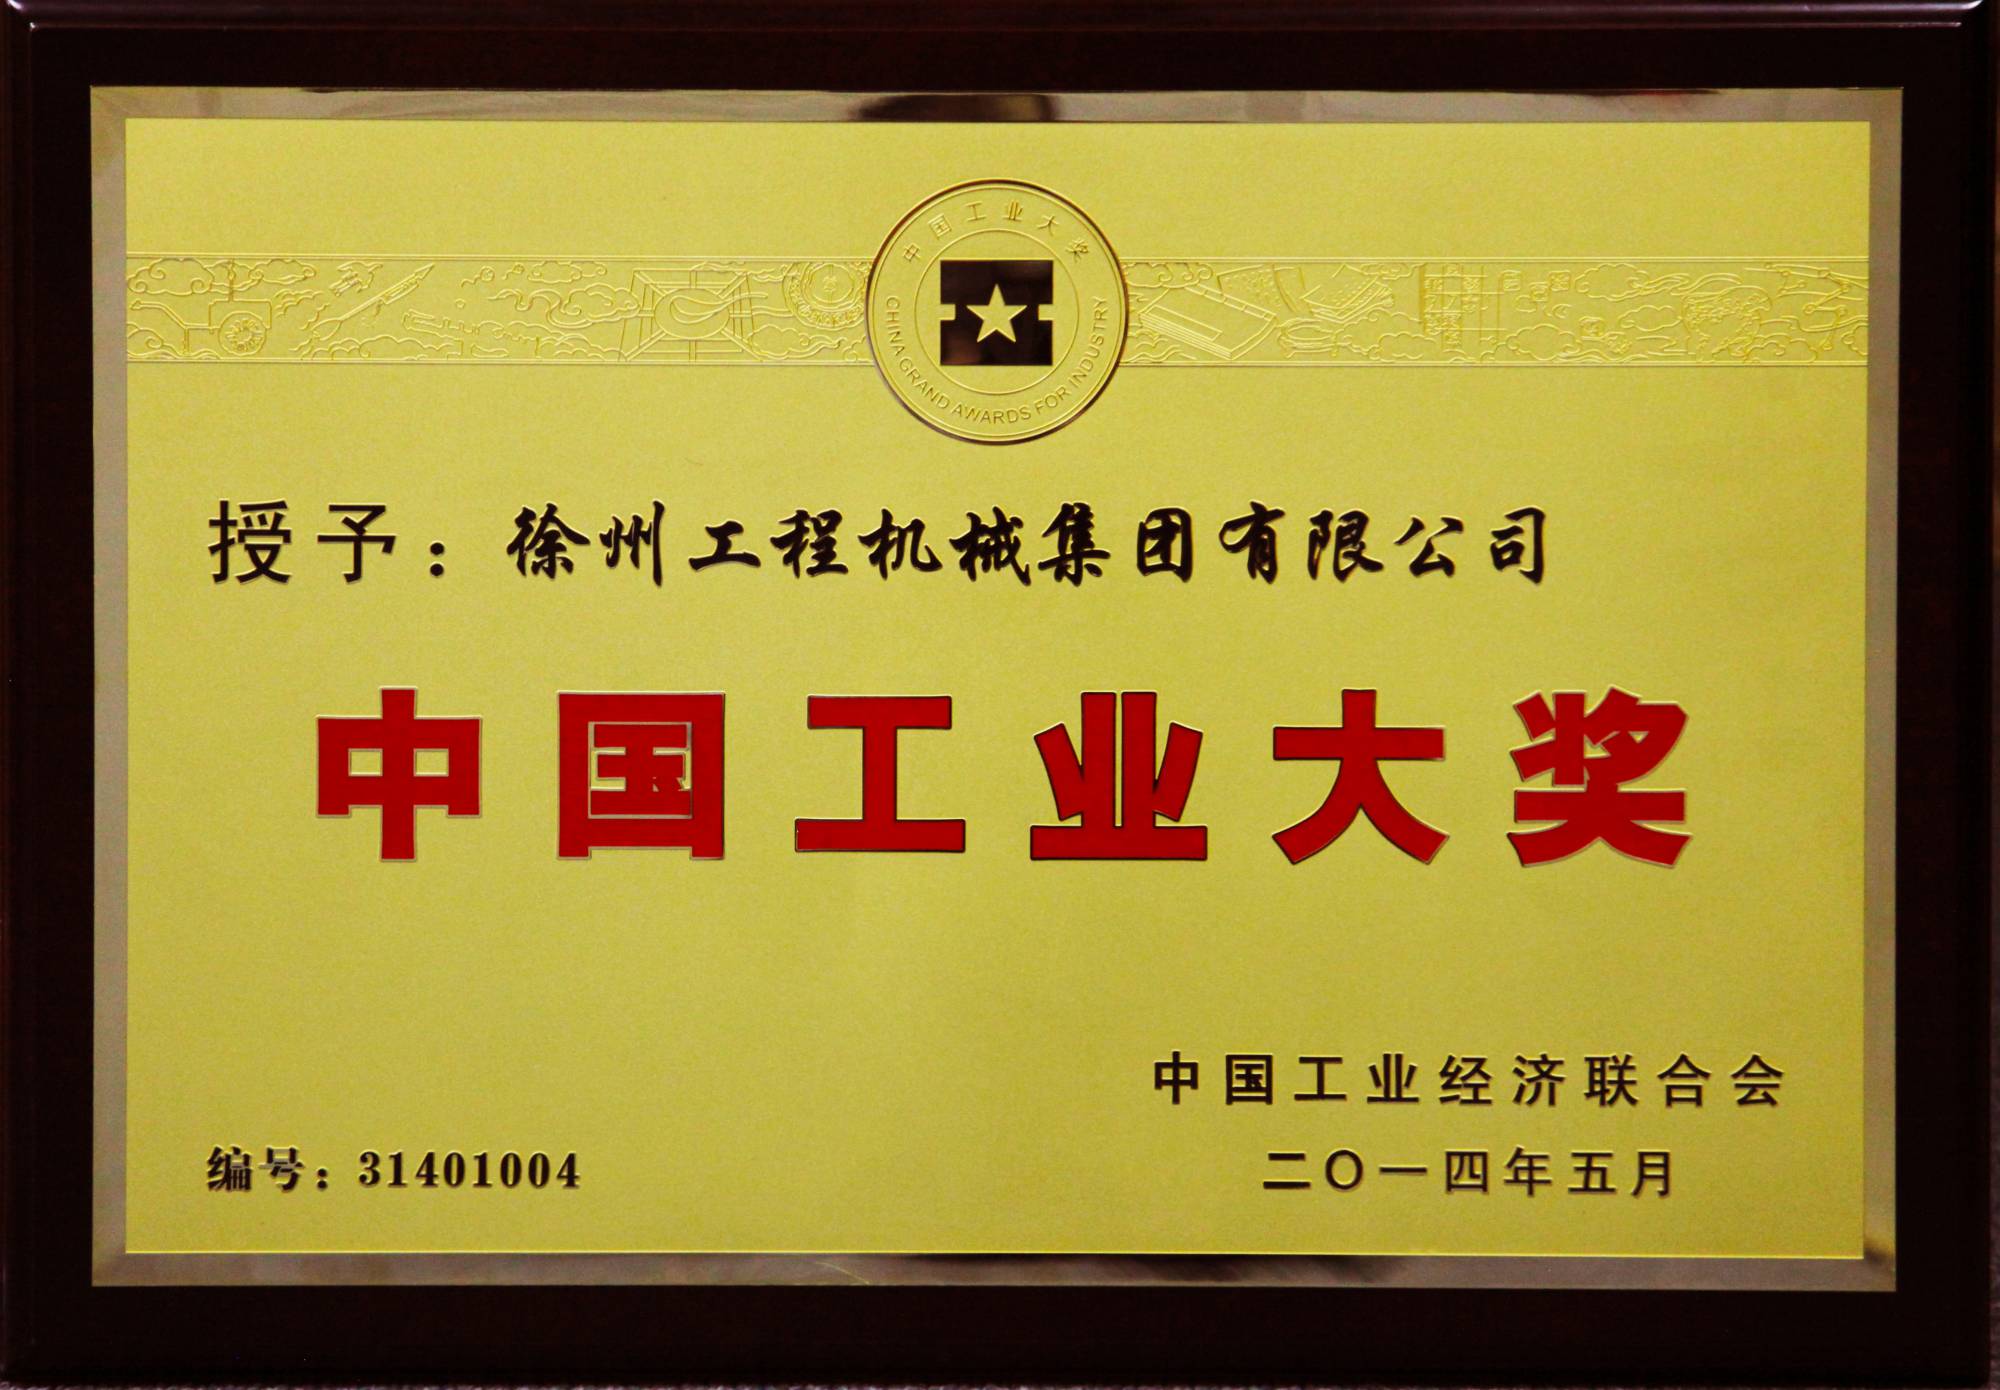 牛宝荣膺行业唯一的中国工业领域最高奖项——中国工业大奖